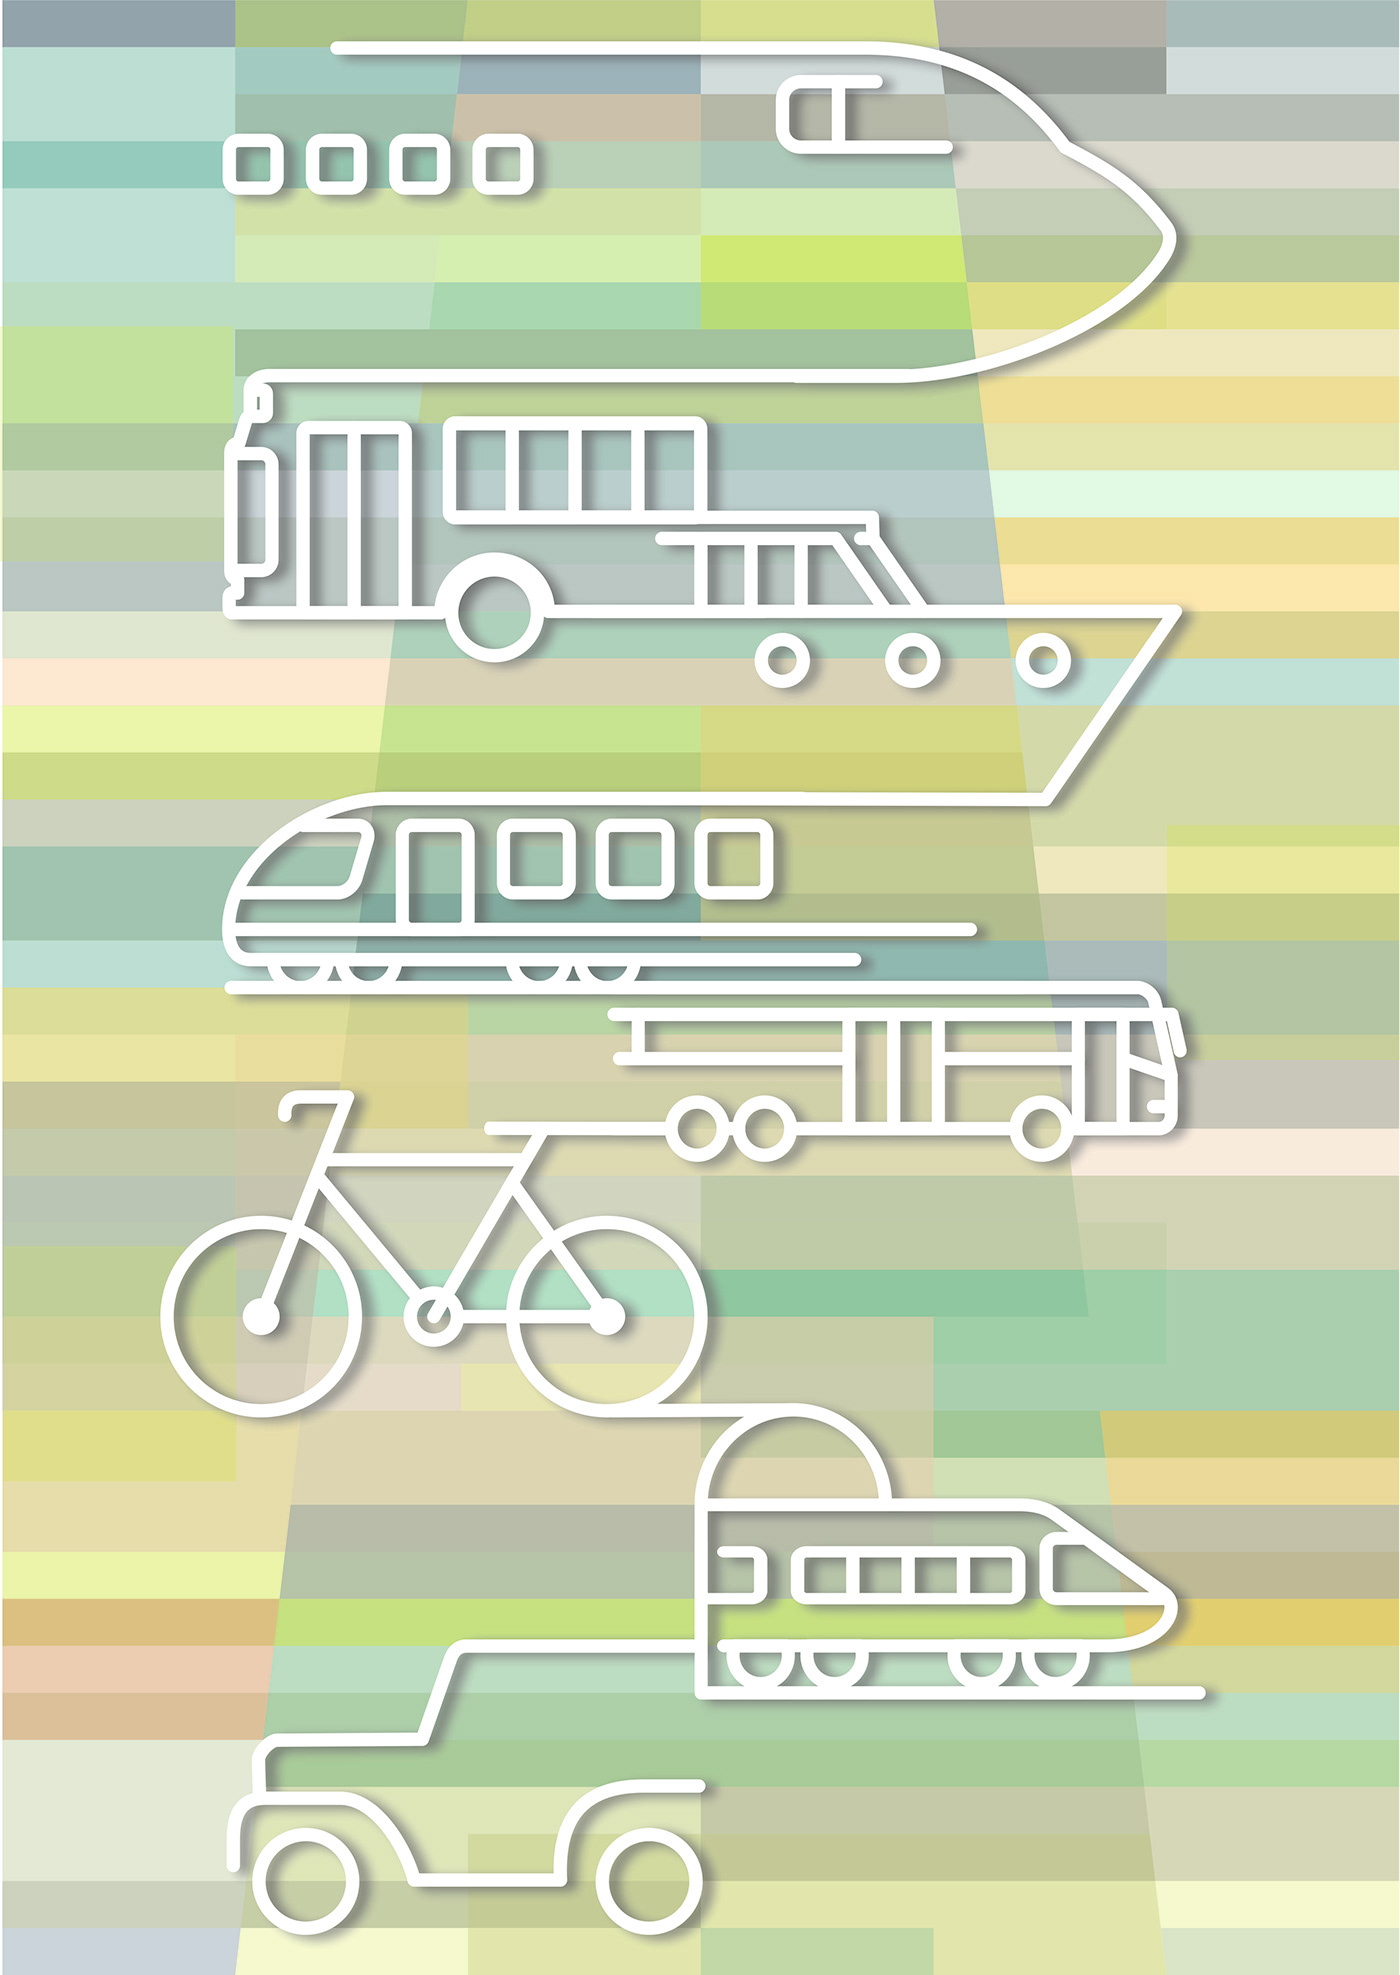 Illustrazione che raggruppa vari mezzi di trasporto, collegati tra di loro.
